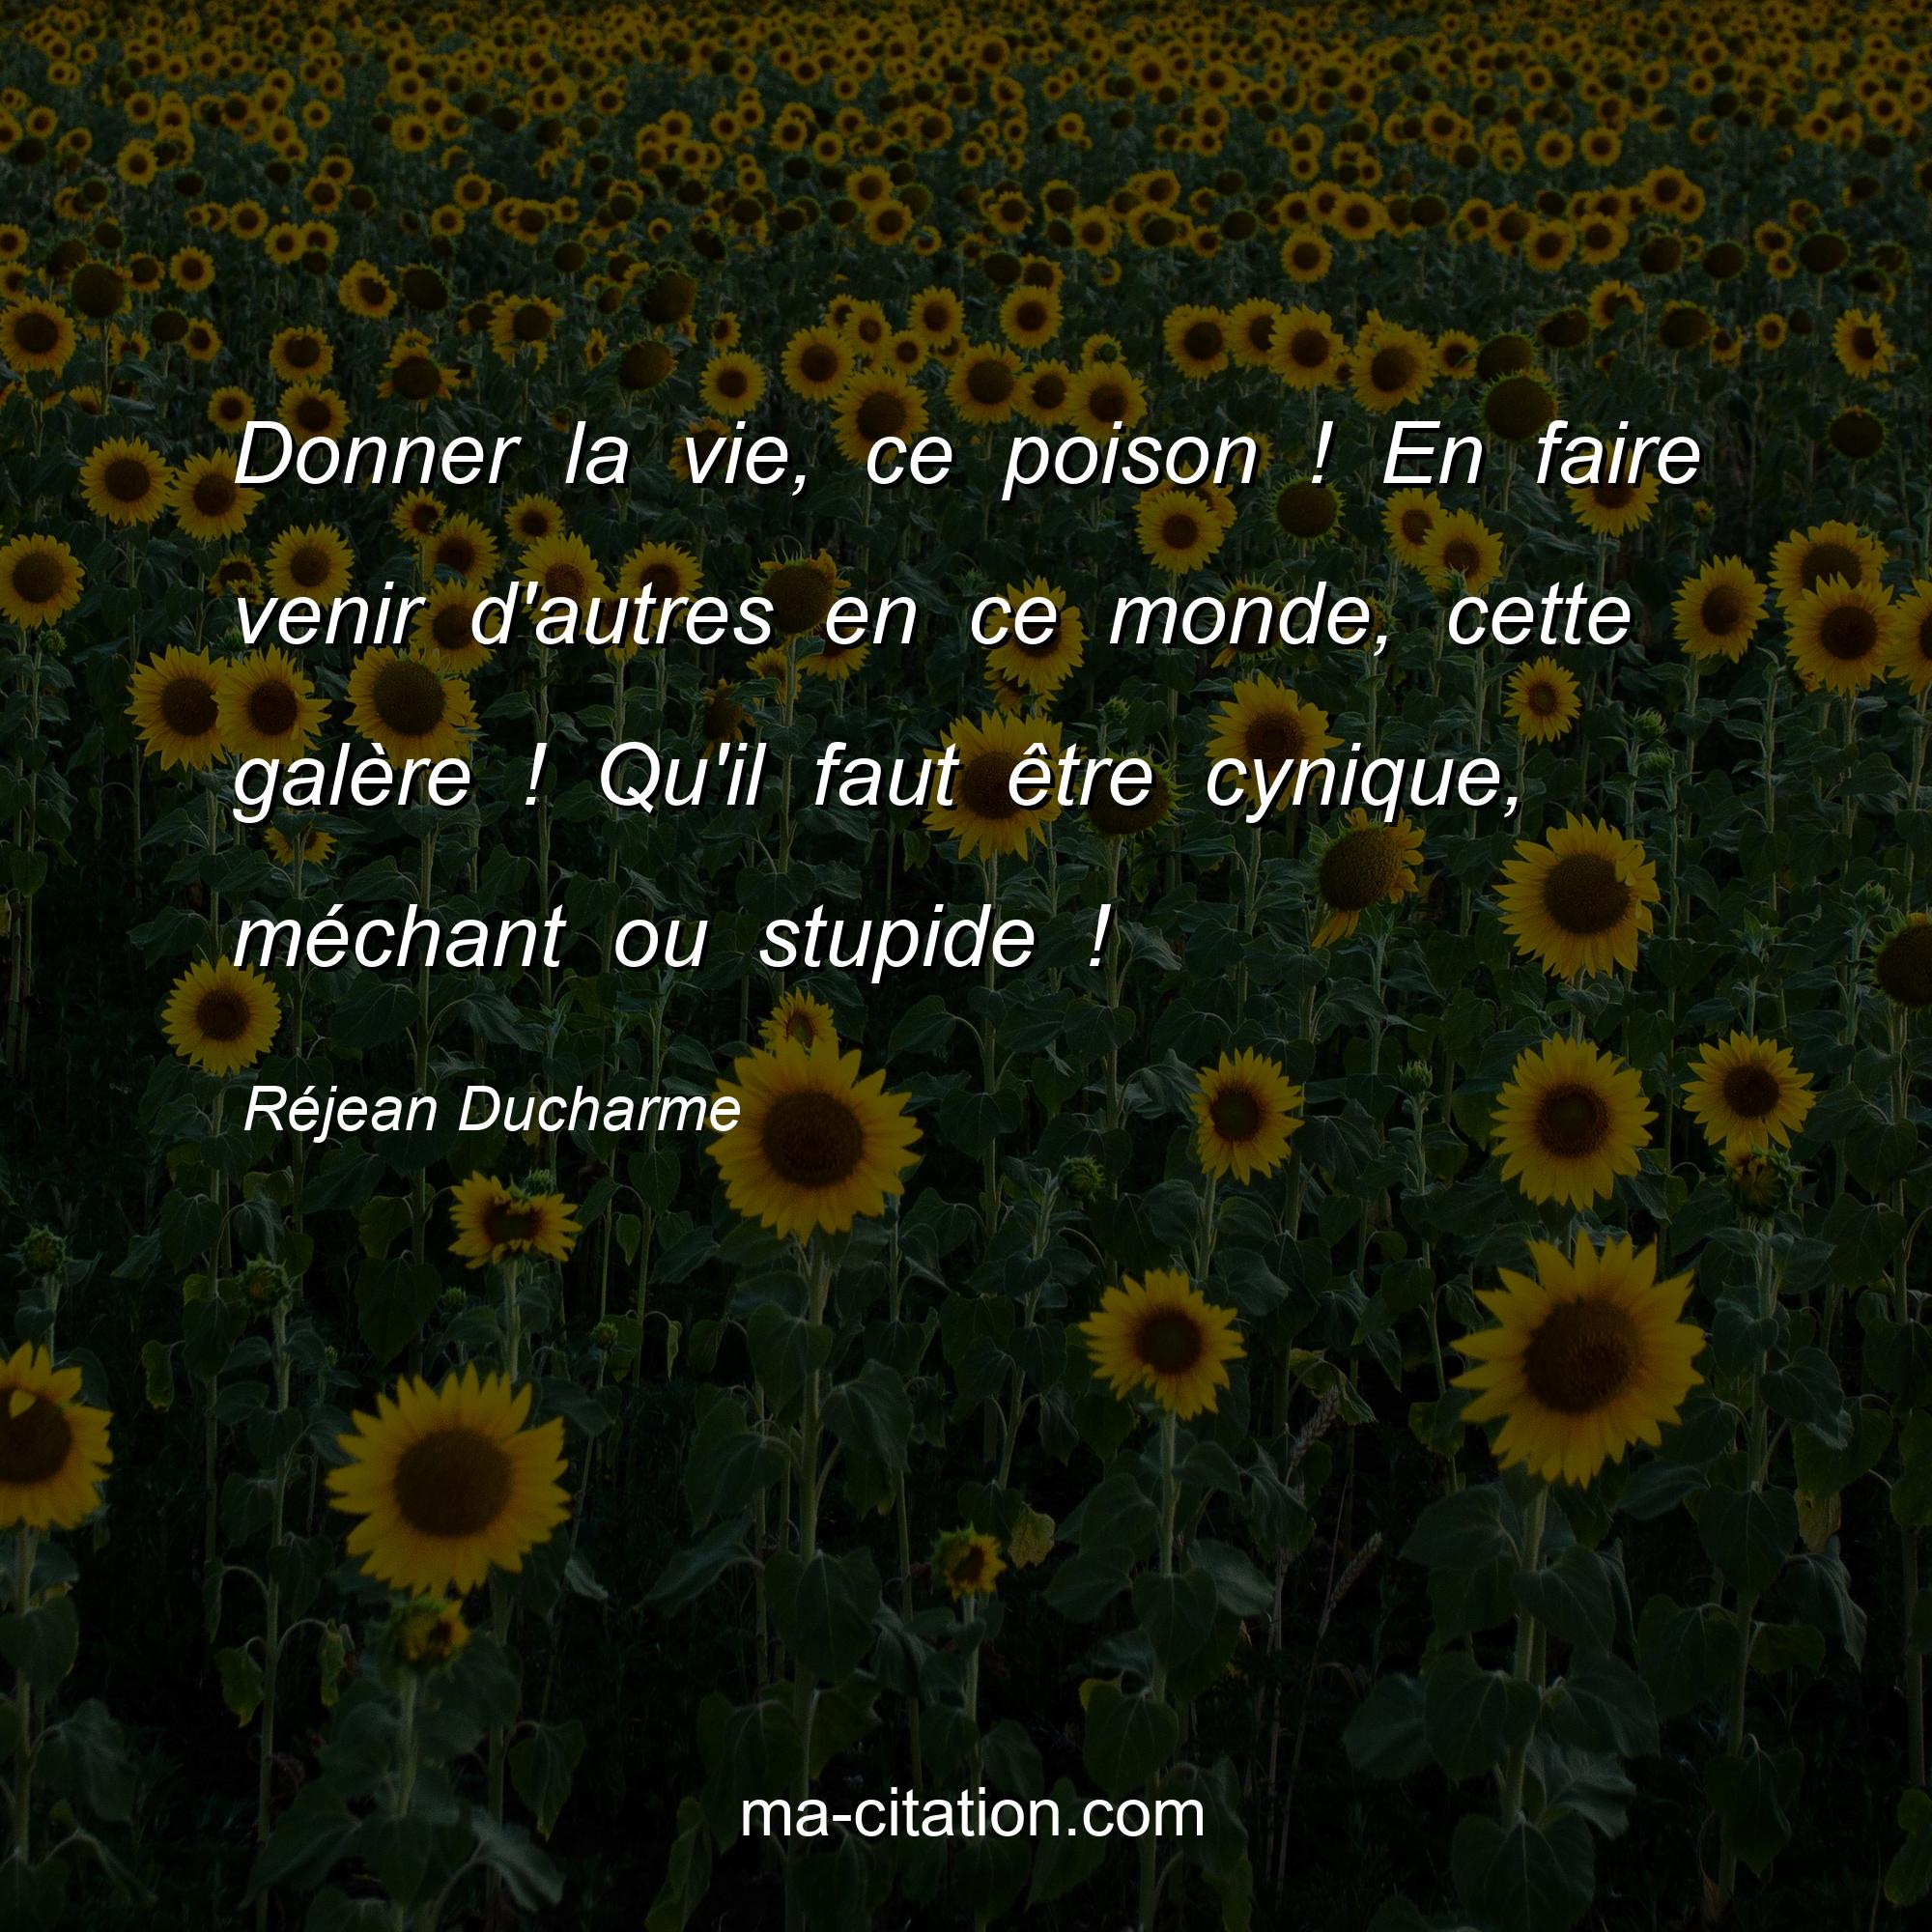 Réjean Ducharme : Donner la vie, ce poison ! En faire venir d'autres en ce monde, cette galère ! Qu'il faut être cynique, méchant ou stupide !